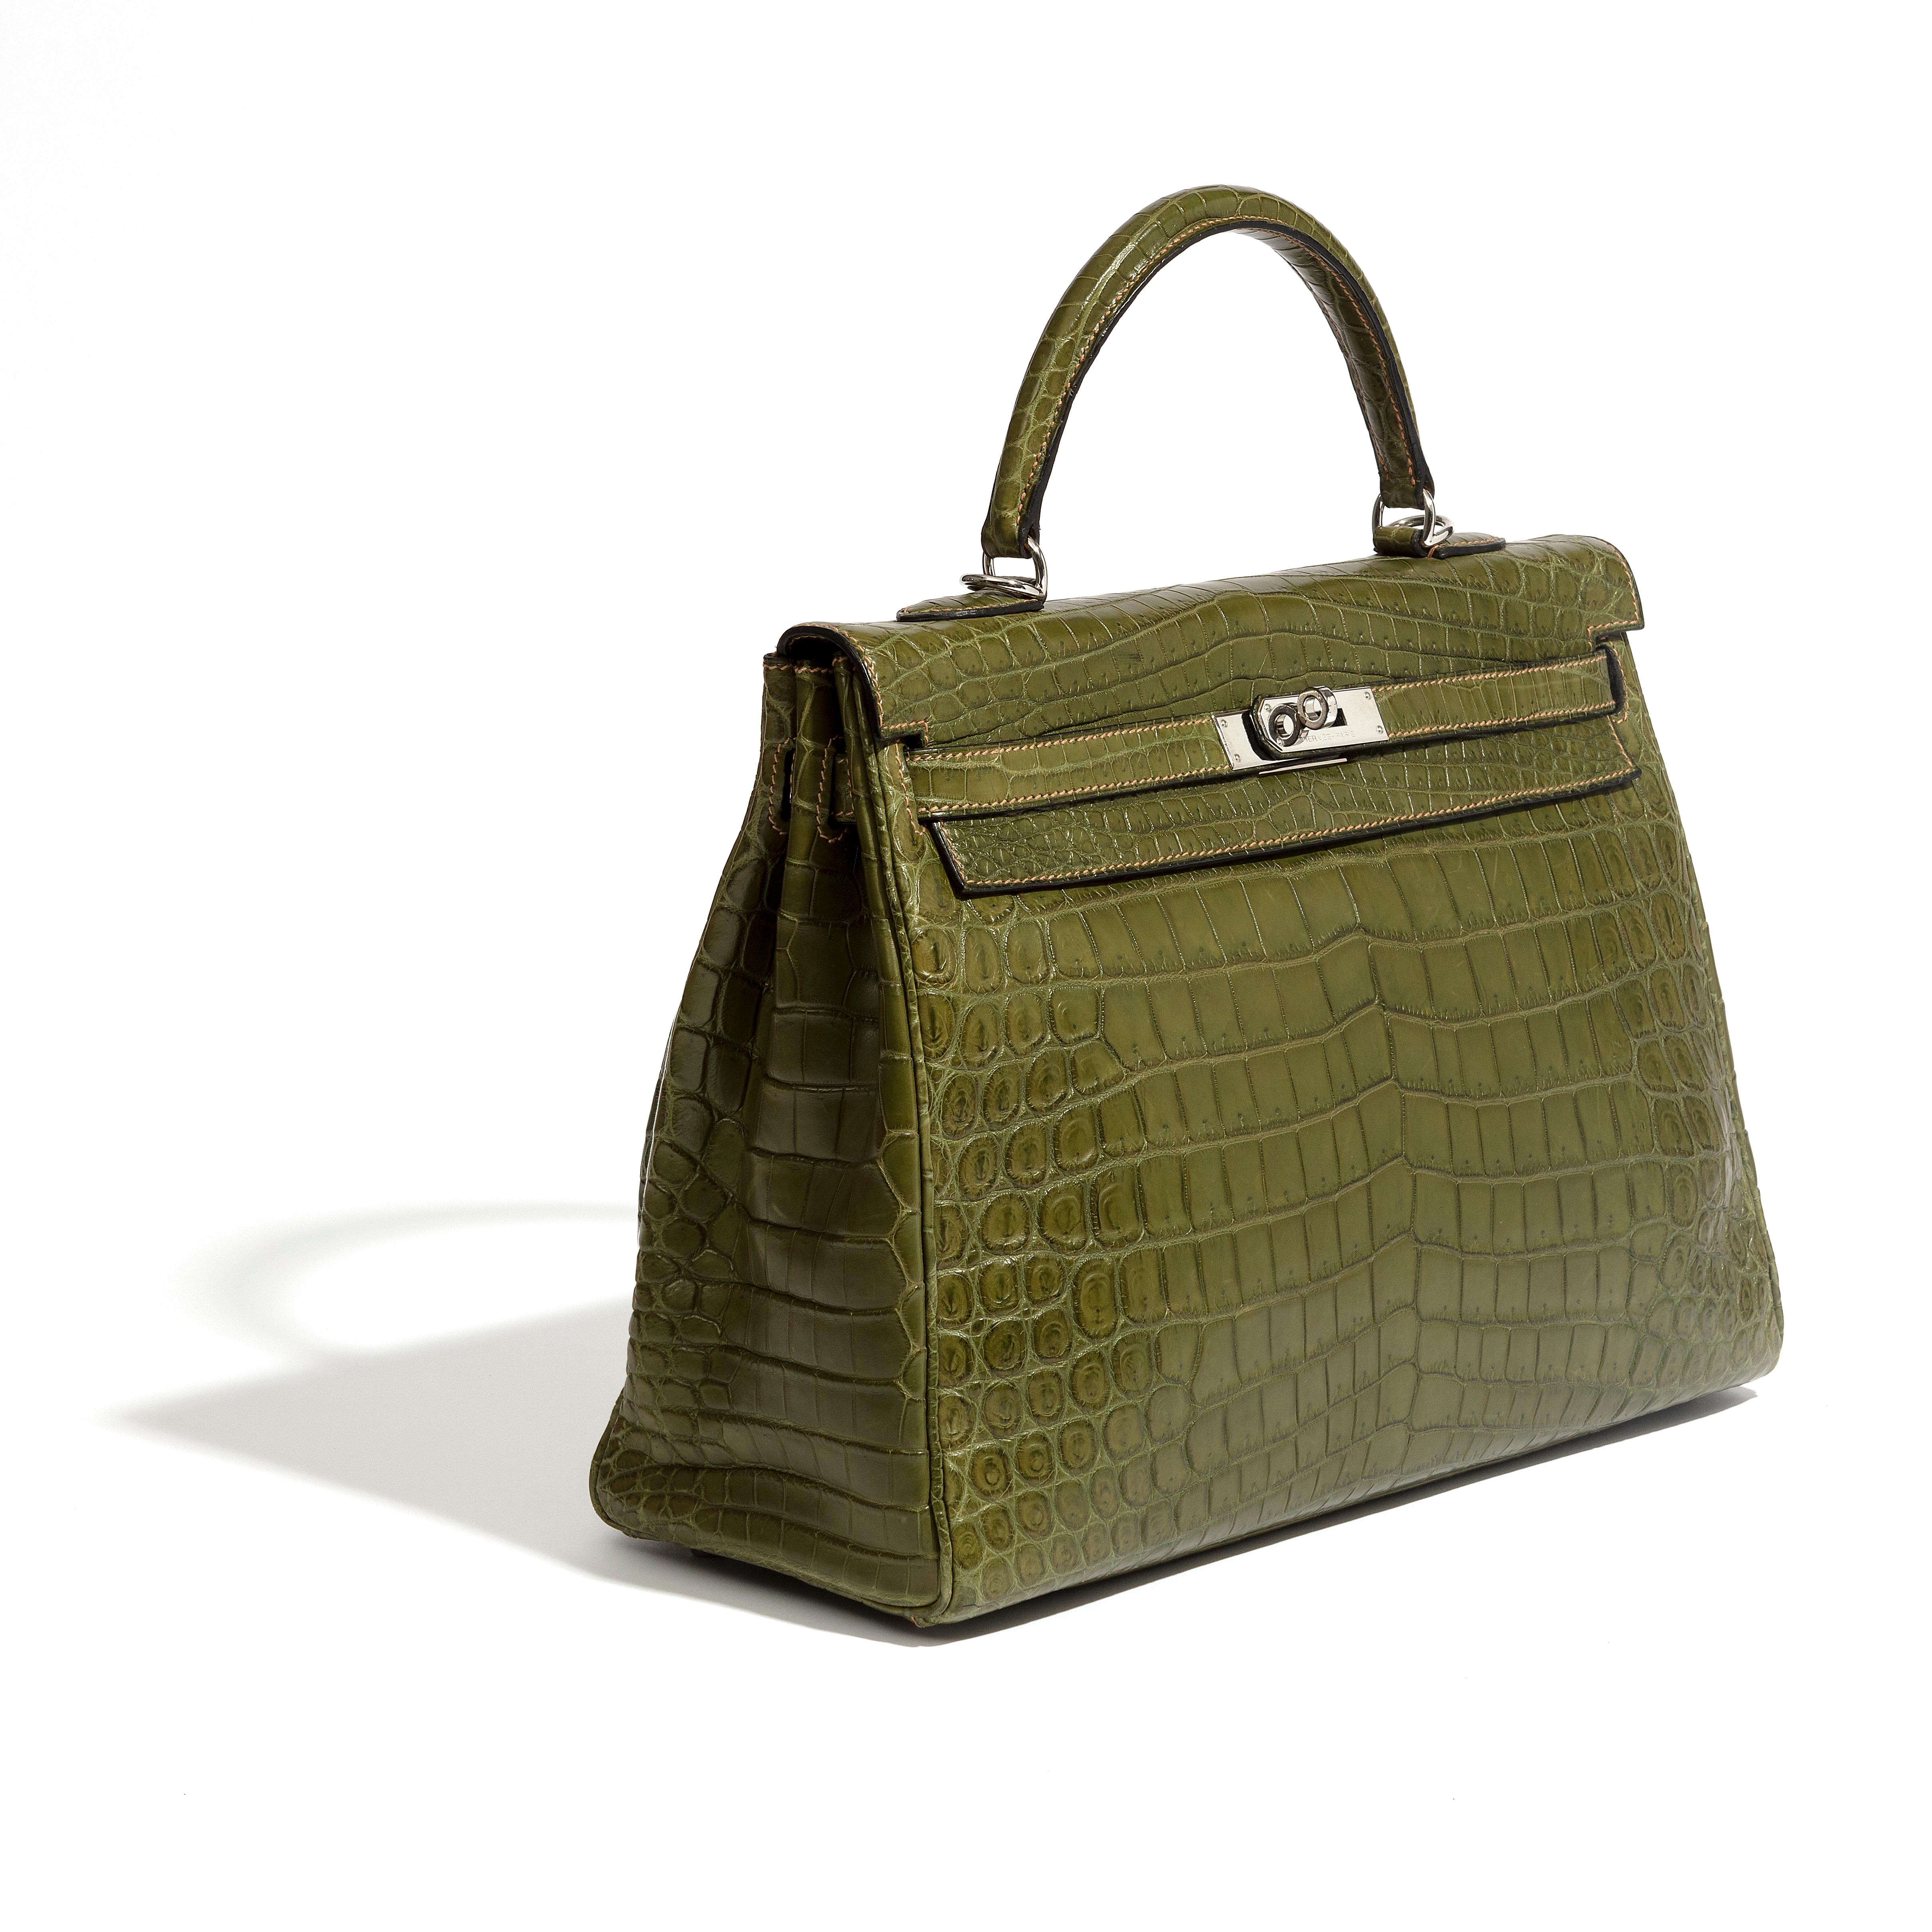 Ce sac d'occasion Kelly 35 Green Niloticus, l'un des modèles les plus recherchés d'Hermès, a été réalisé en cuir de crocodile vert kaki. Un véritable témoignage de la qualité de l'artisanat de la maison. 

* Poignée supérieure 
* Quincaillerie en